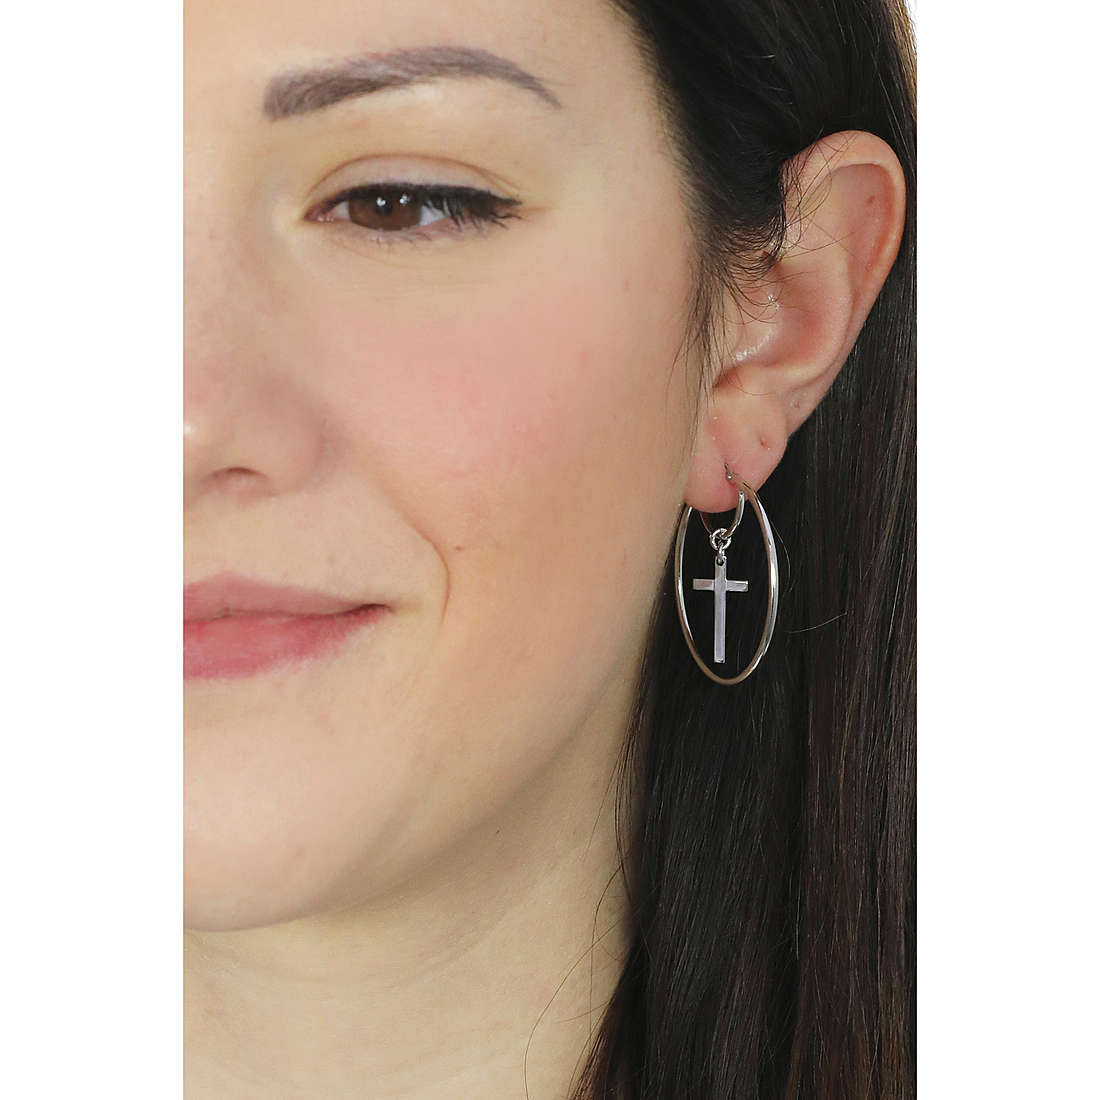 Amen earrings woman ORCECRB wearing